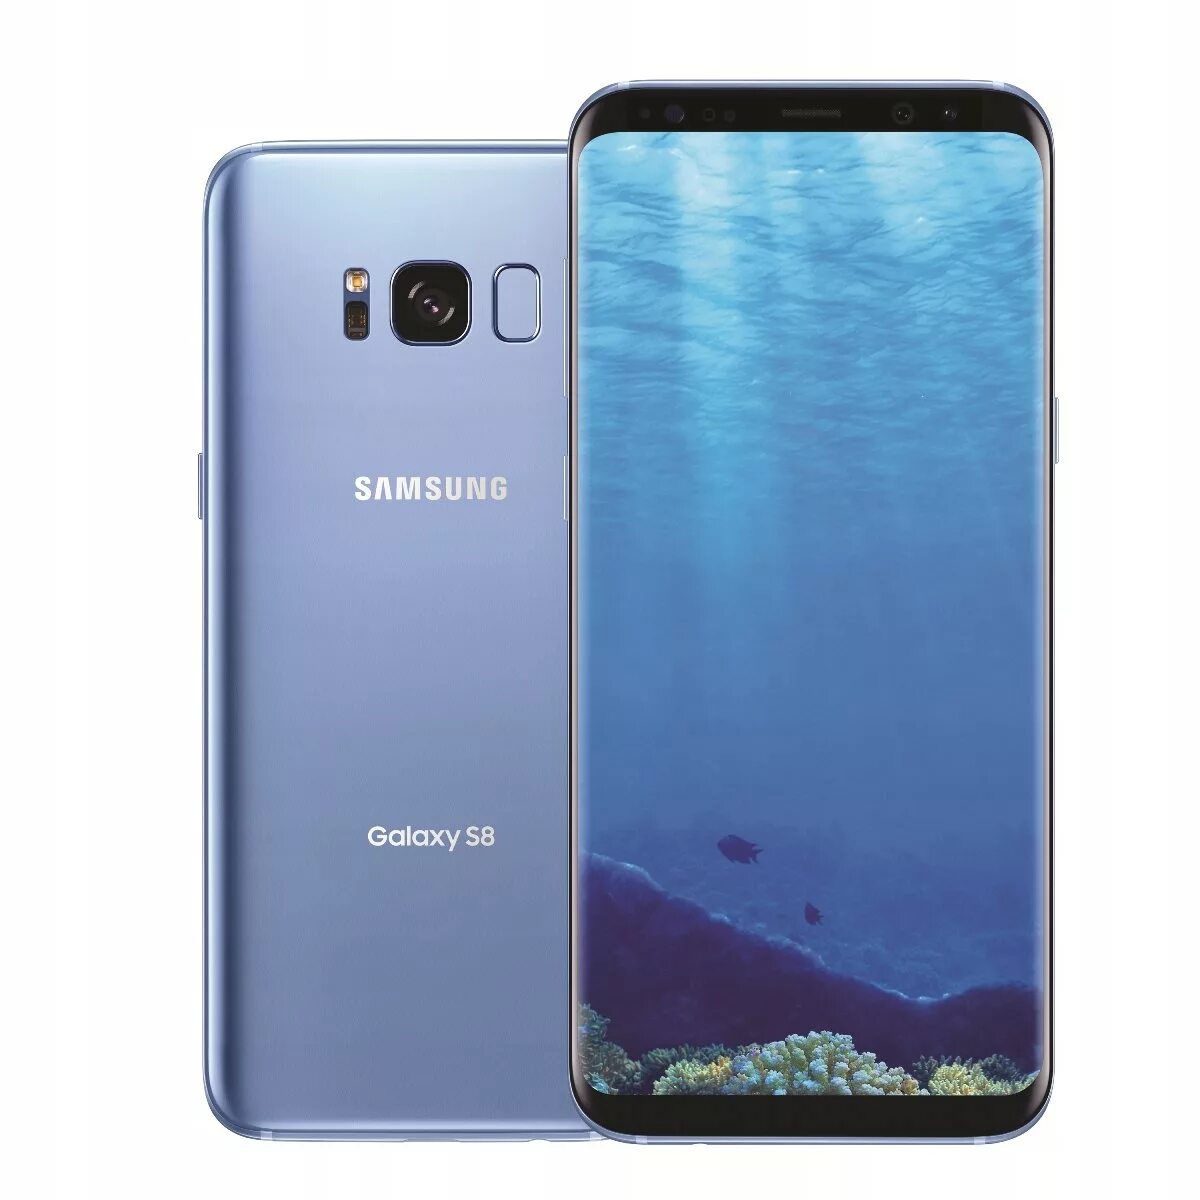 Samsung Galaxy s8 64gb. Samsung Galaxy s8 Plus 128gb. Samsung Galaxy s8 Plus 64. Samsung SM g955fd Galaxy s8 Plus. 5g samsung s8